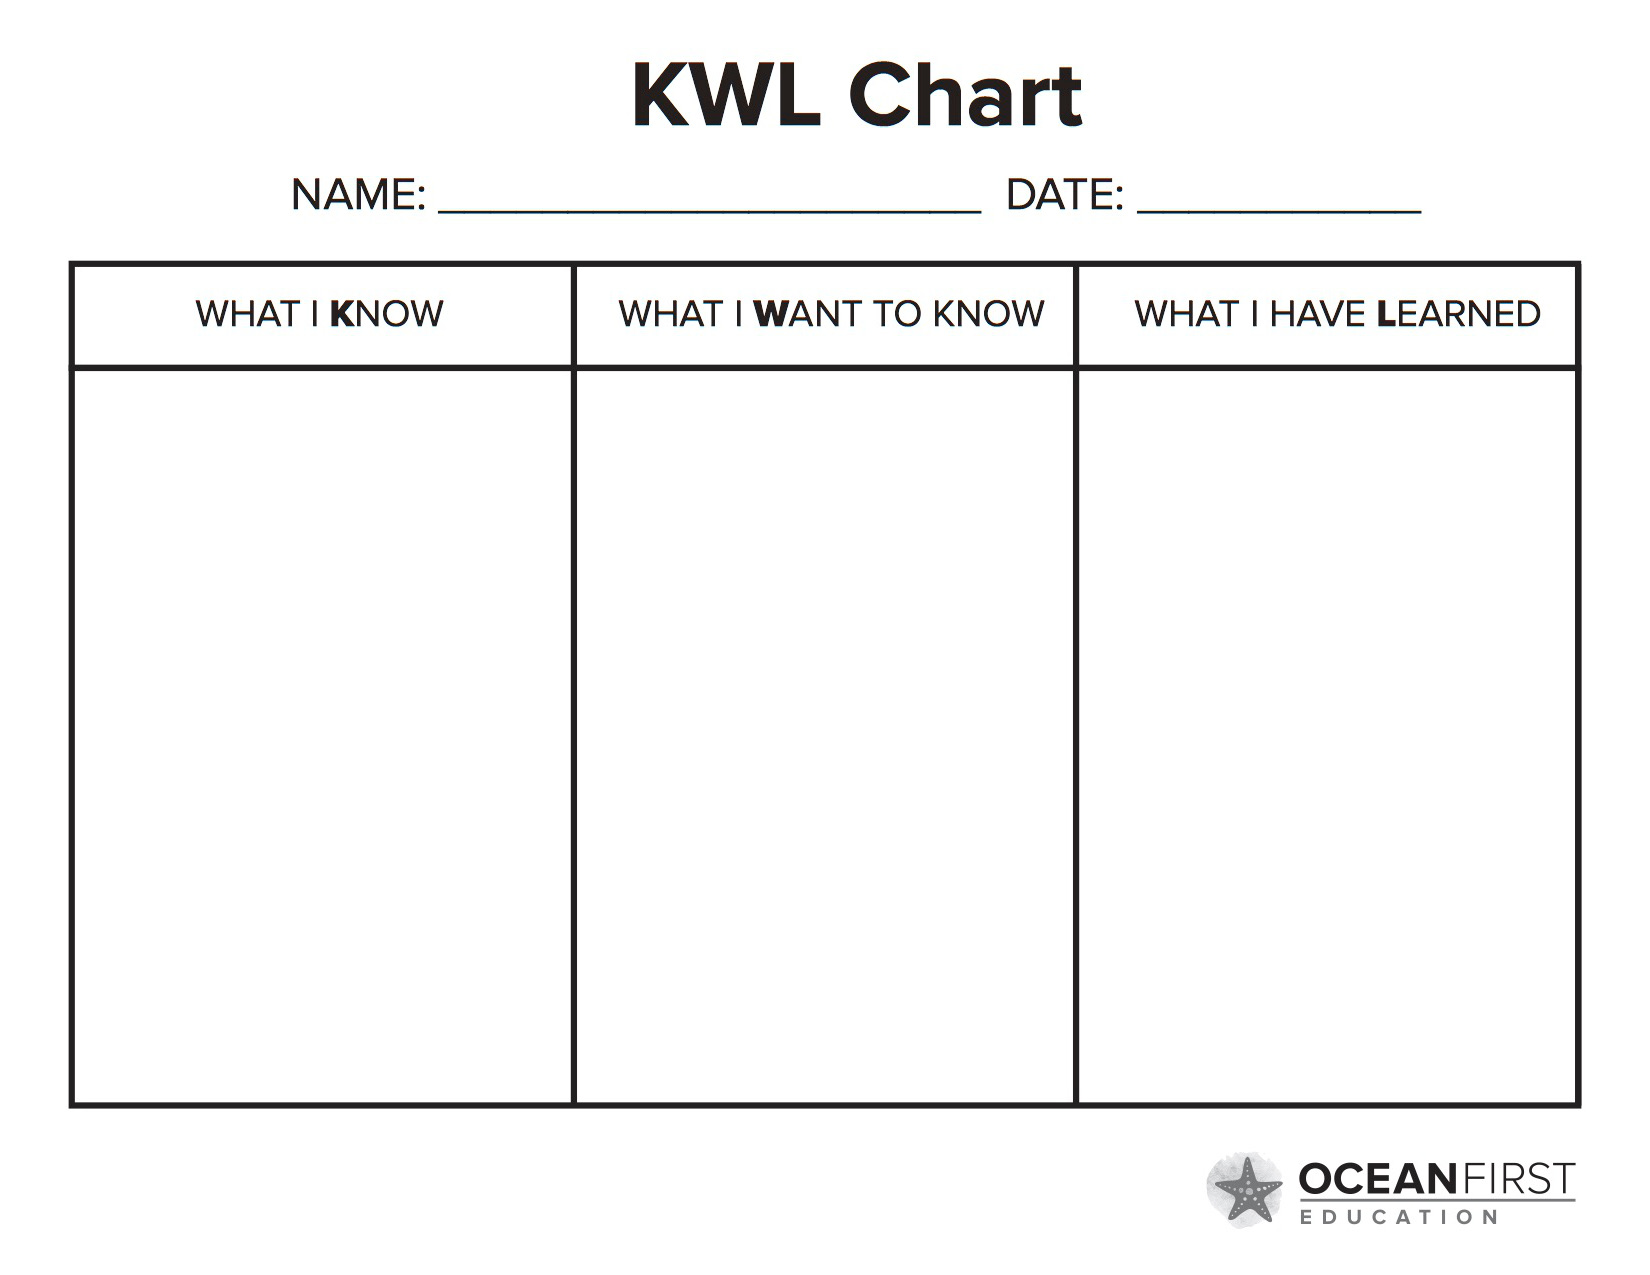 U want know. Таблица KWL. KWL. KWL-диаграммы. Стратегия KWL.